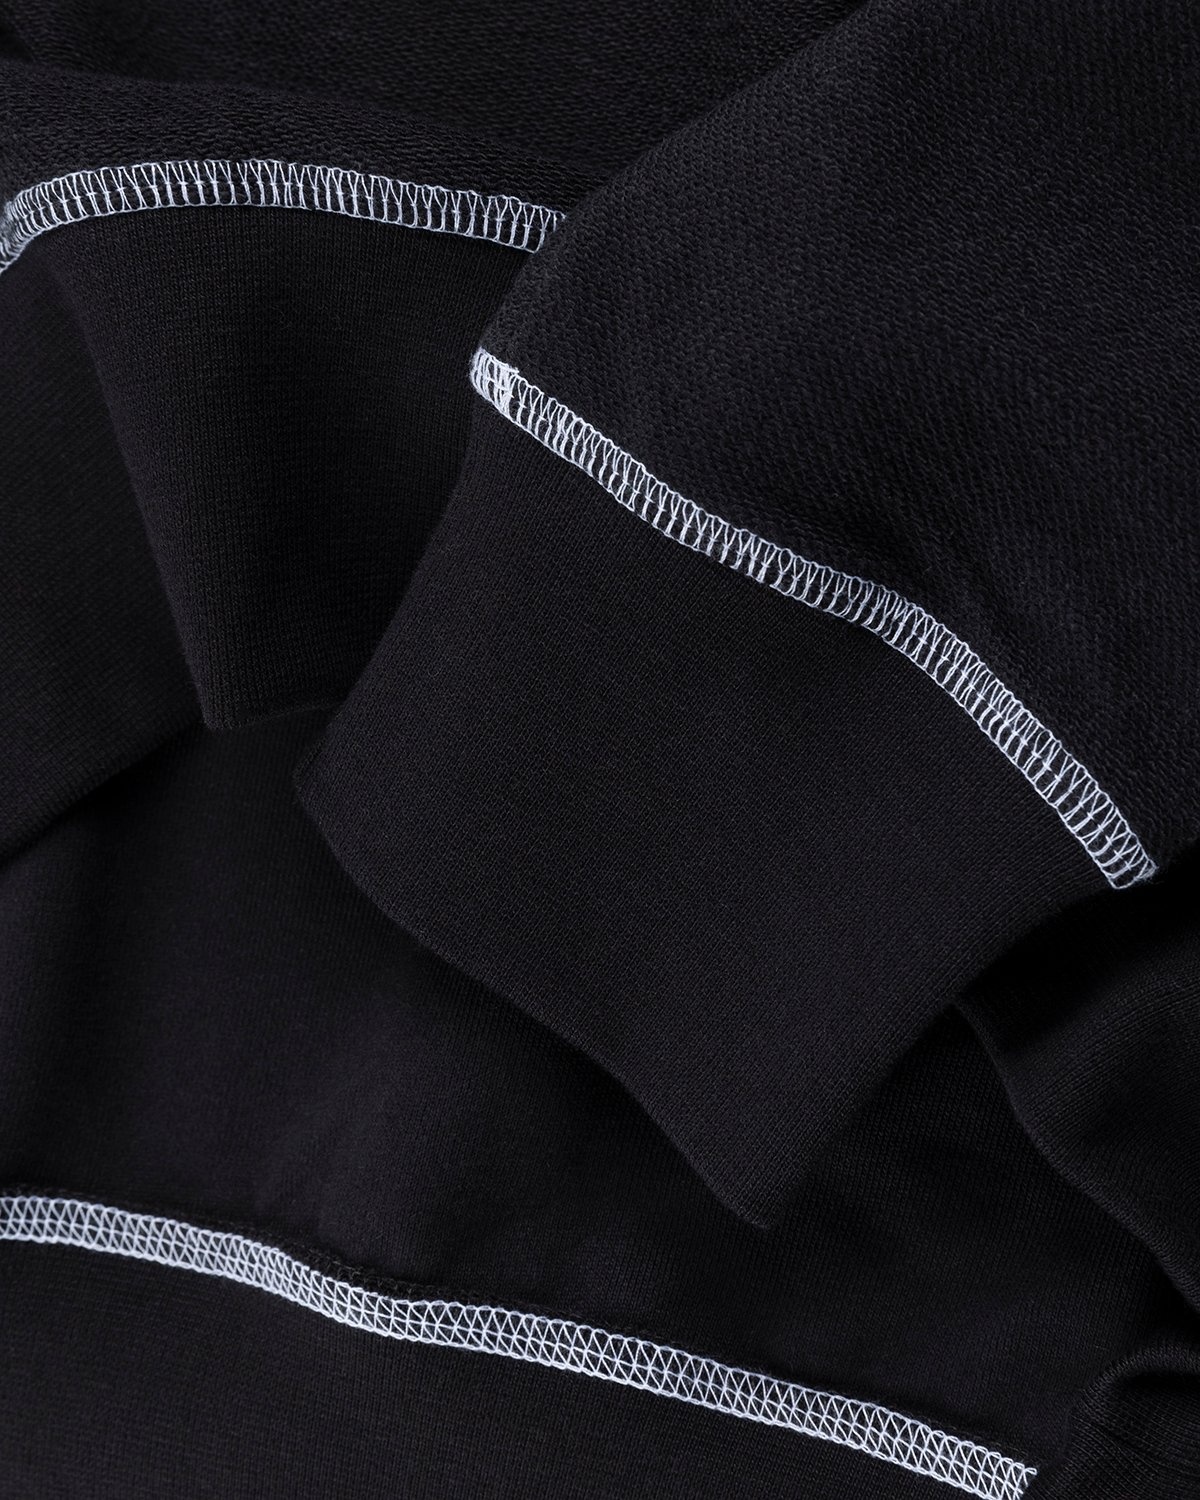 J.W. Anderson – Inside Out Contrast Sweatshirt Black - Sweats - Black - Image 5